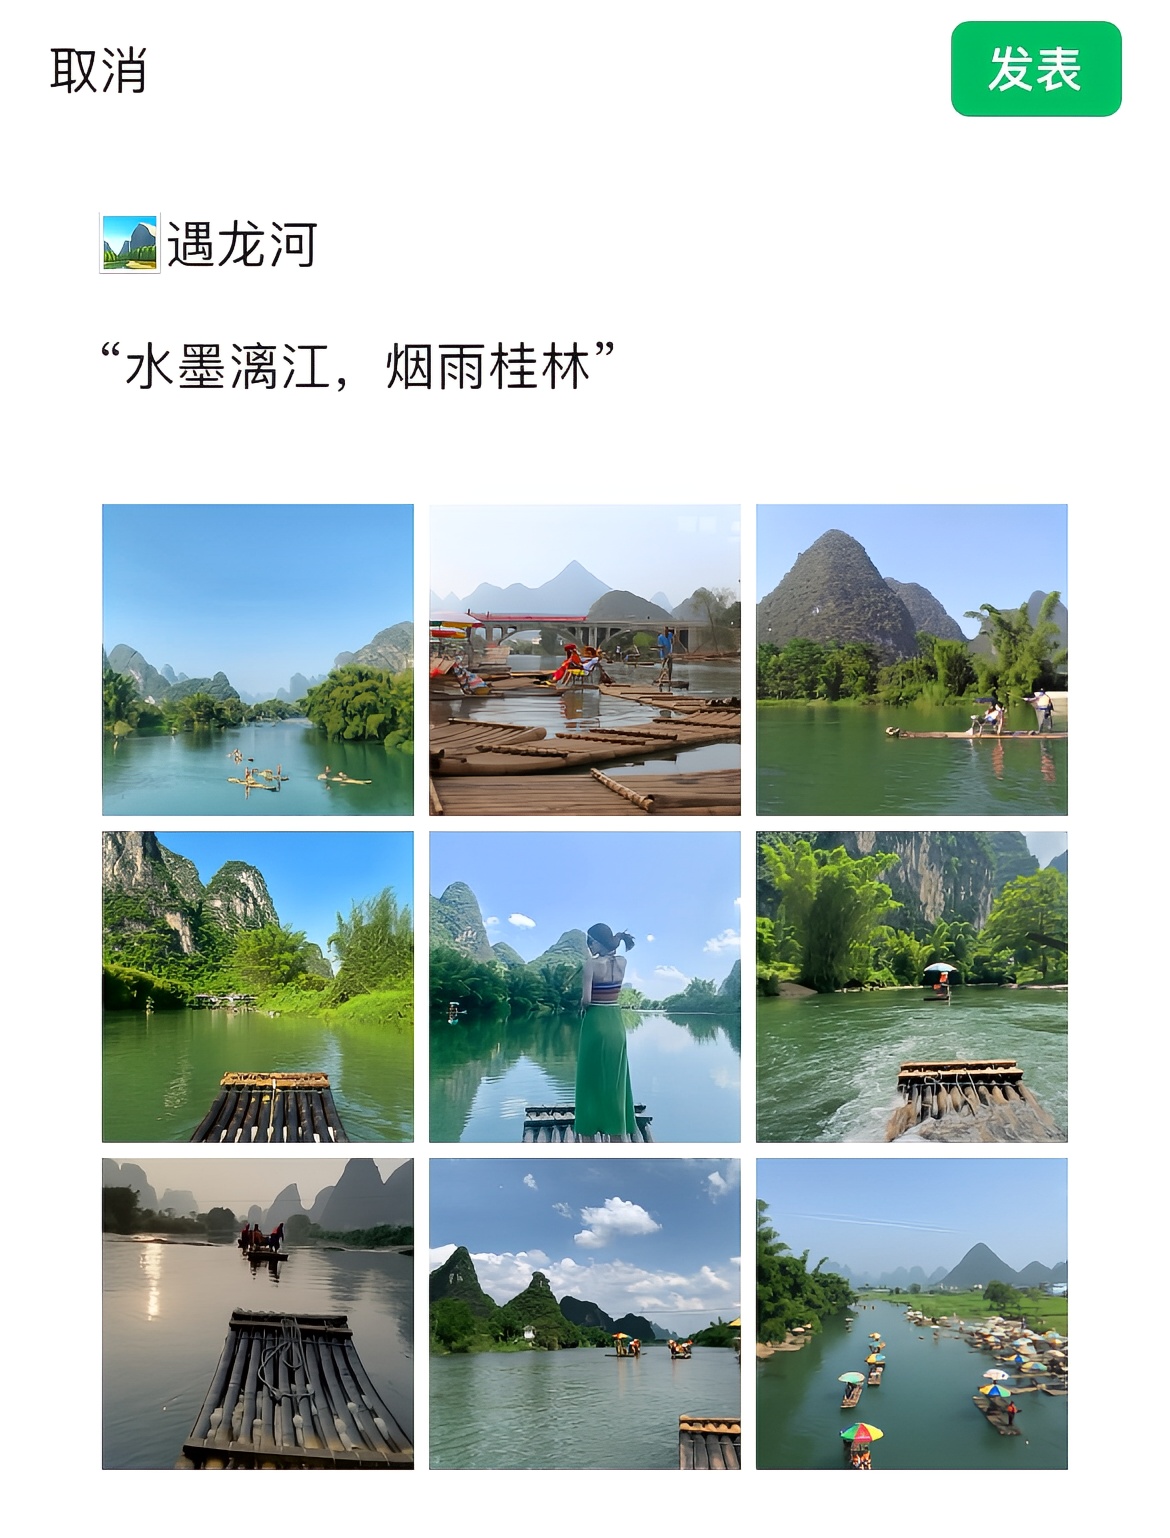 暑假去桂林|朋友圈这样发被赞爆 7、8、9月简直是去桂林旅行的蕞佳时期，“江作青罗带，山如碧玉簪”，